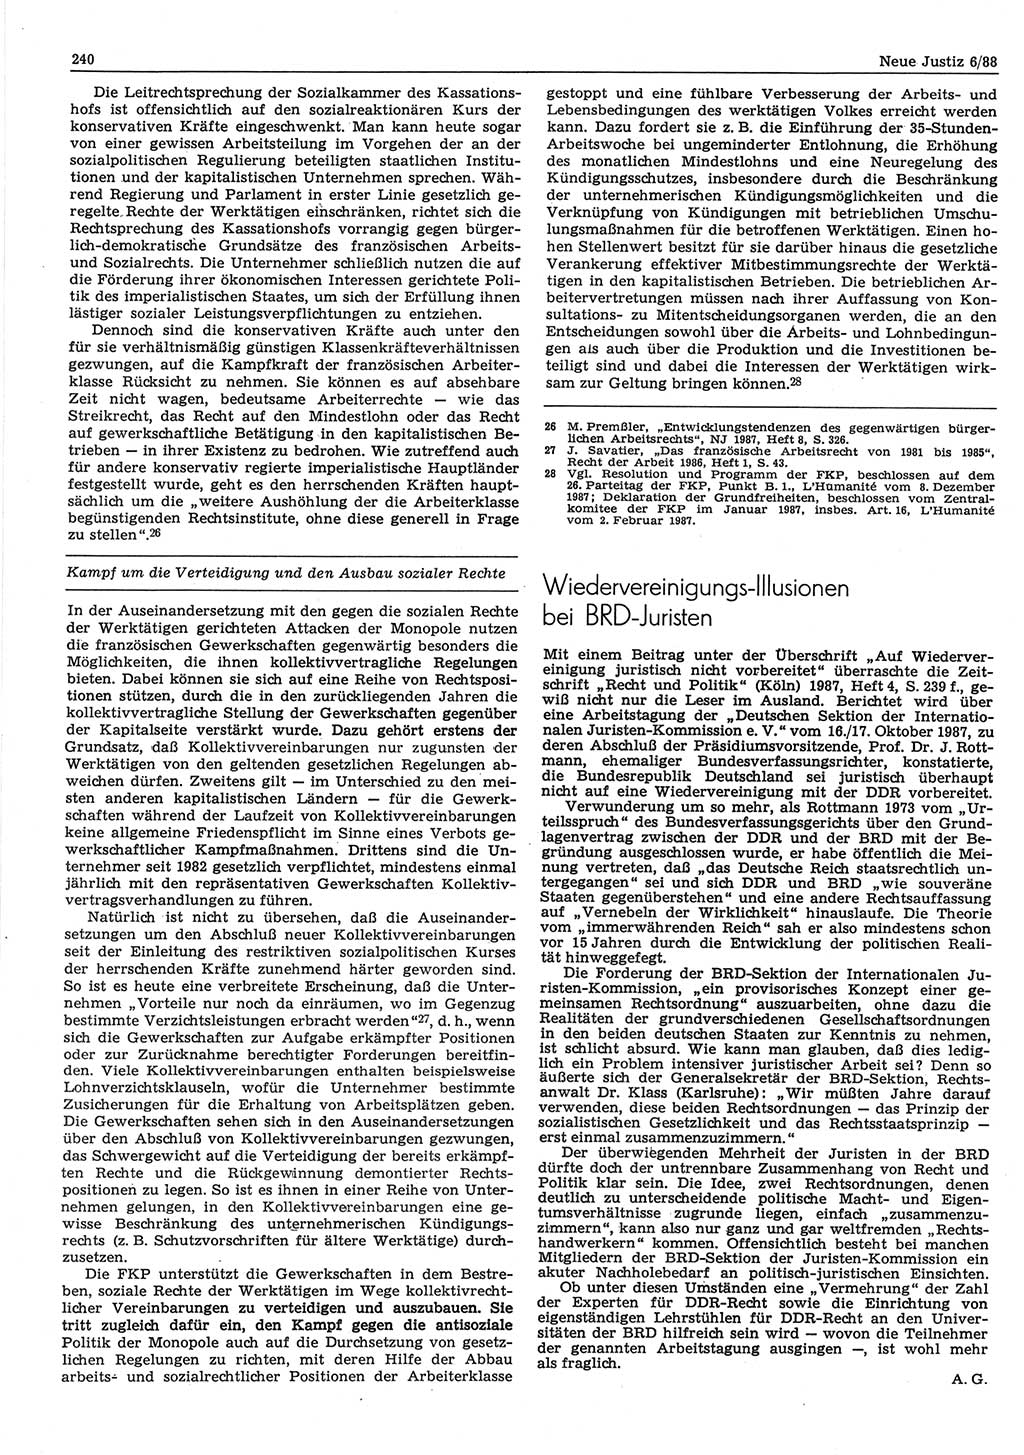 Neue Justiz (NJ), Zeitschrift für sozialistisches Recht und Gesetzlichkeit [Deutsche Demokratische Republik (DDR)], 42. Jahrgang 1988, Seite 240 (NJ DDR 1988, S. 240)